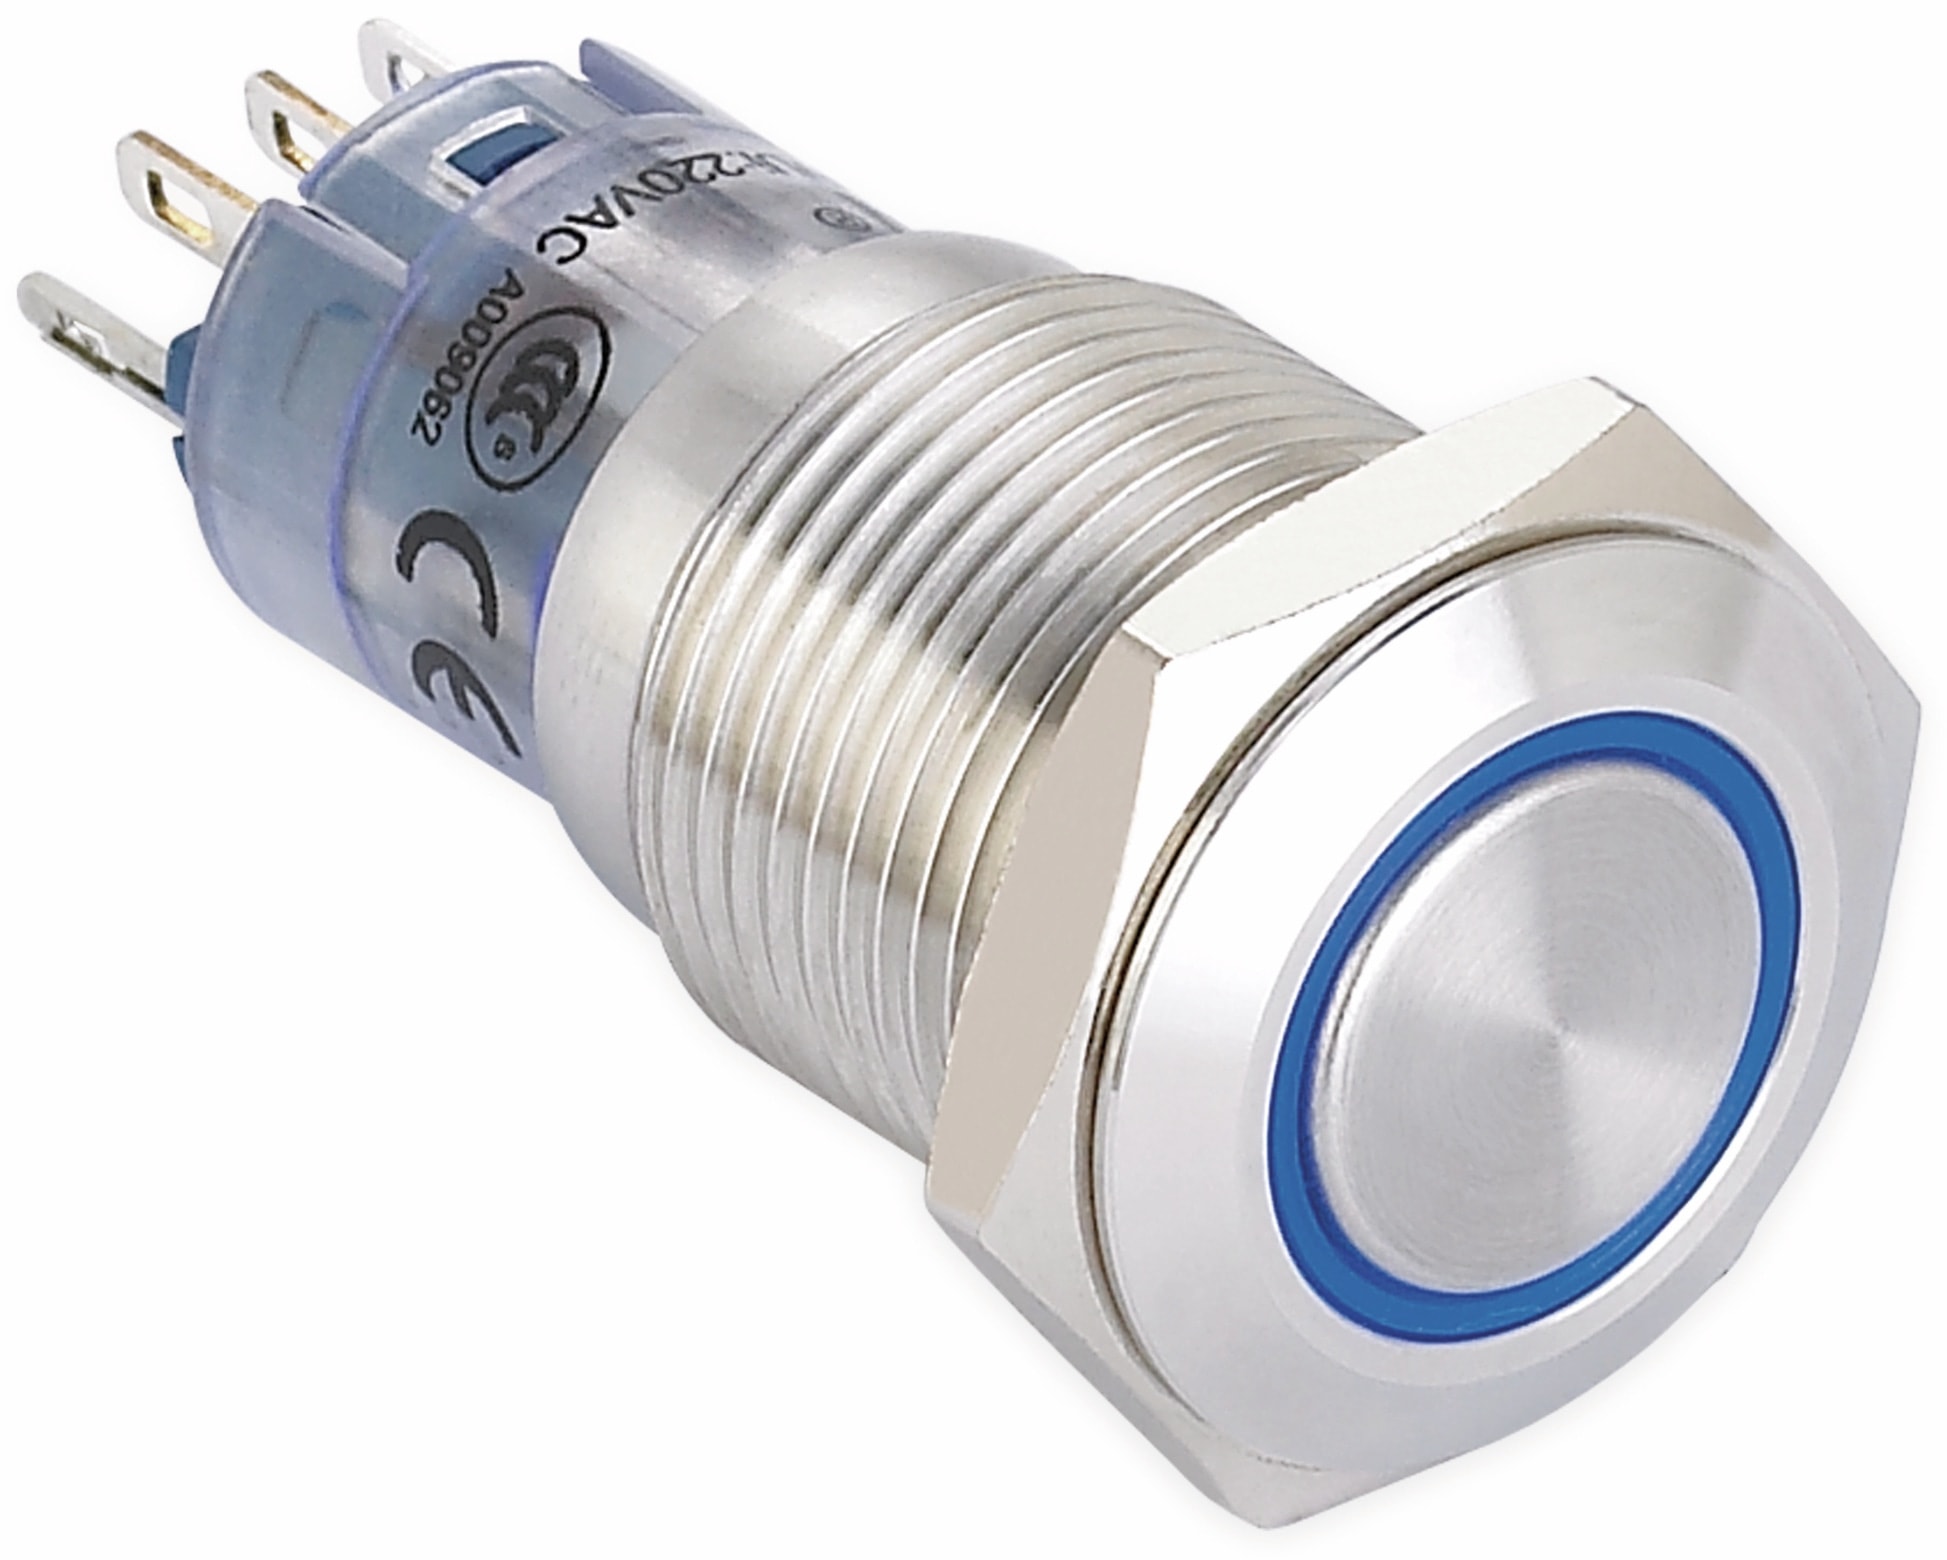 ONPOW Schalter, 24 V/DC, 1x Off/On, Beleuchtung blau, Lötanschluss, flach rund, Edelstahl, 16 mm